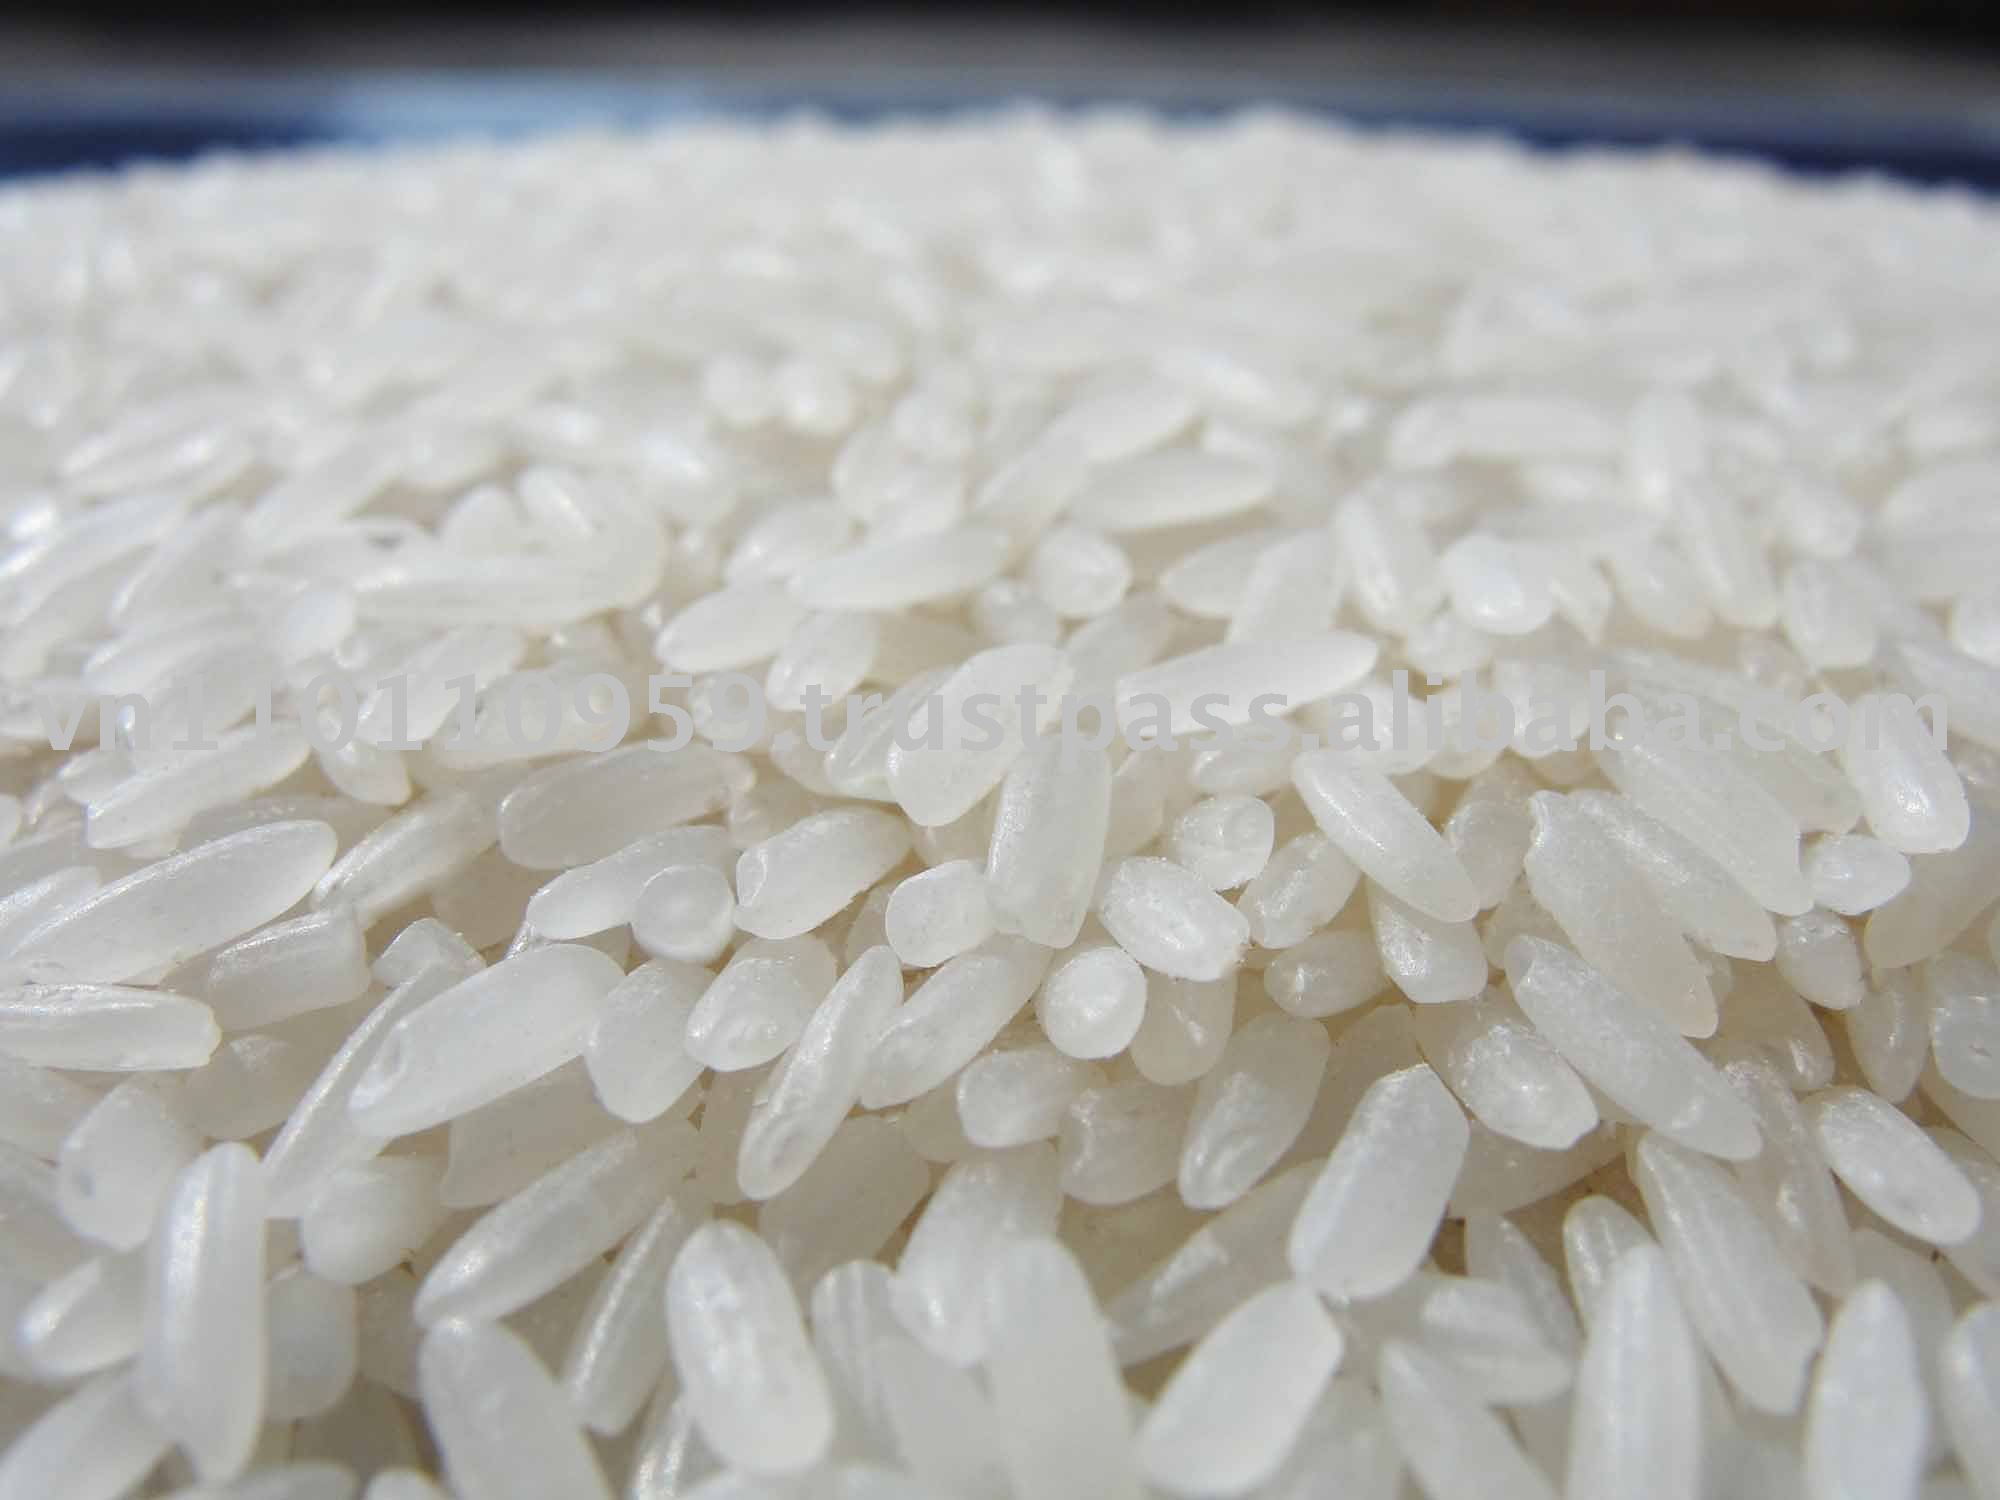   الحكومة تطرح أرز أبيض بالأسواق بسعر 6.50 للمستهلك